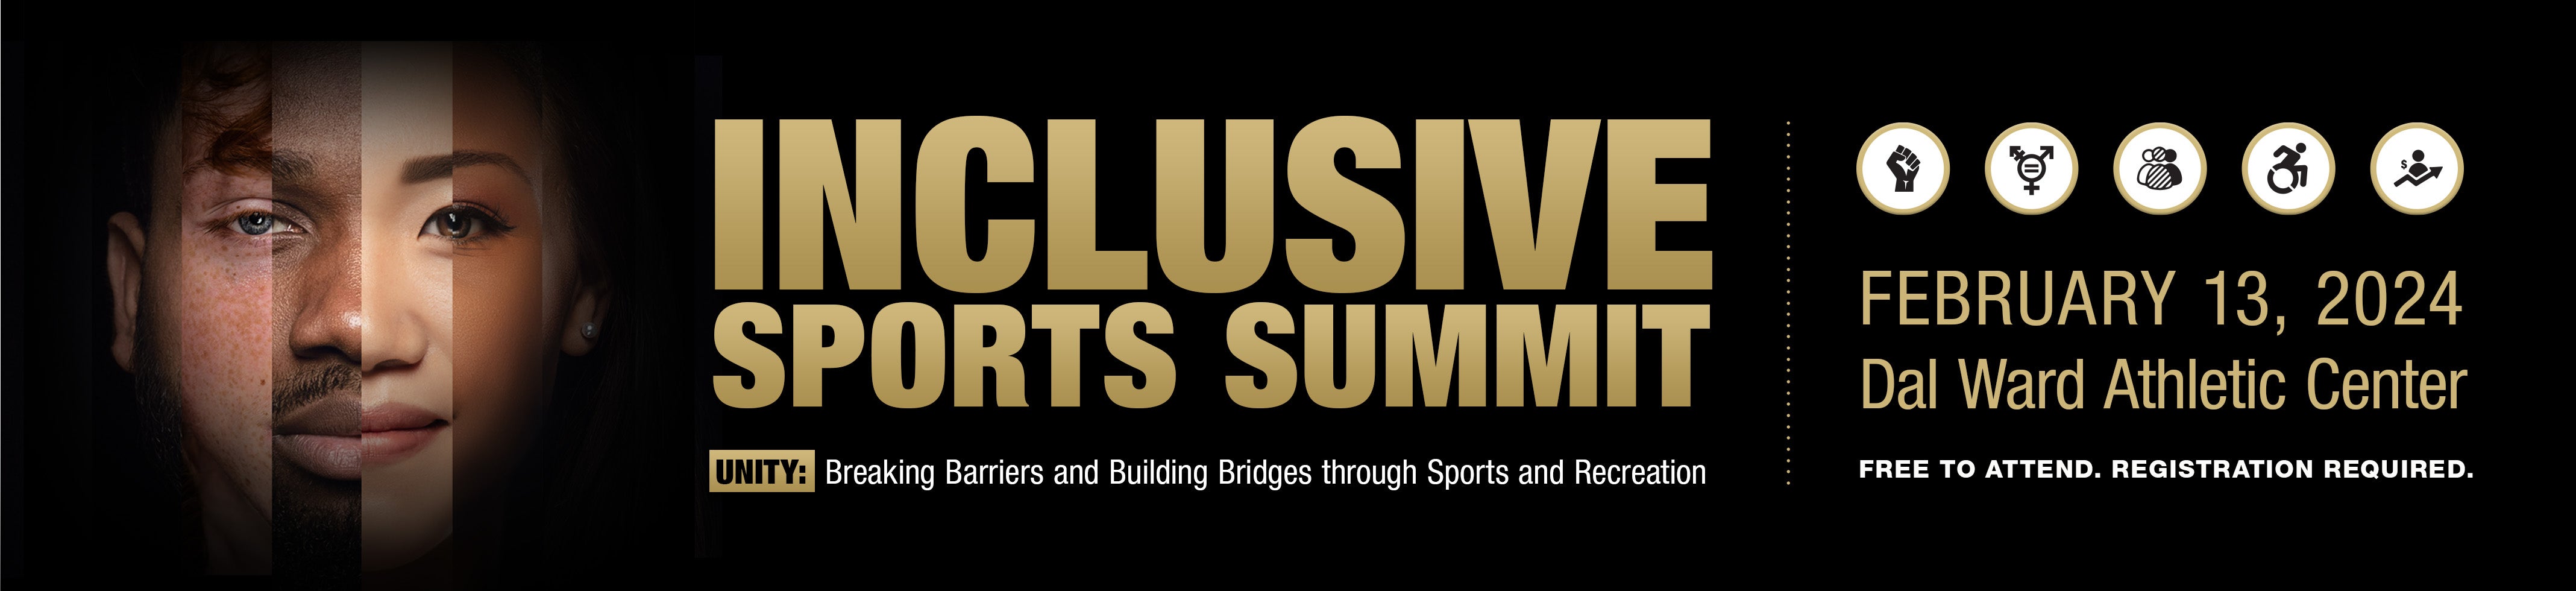 Inclusive Sports Summit graphic